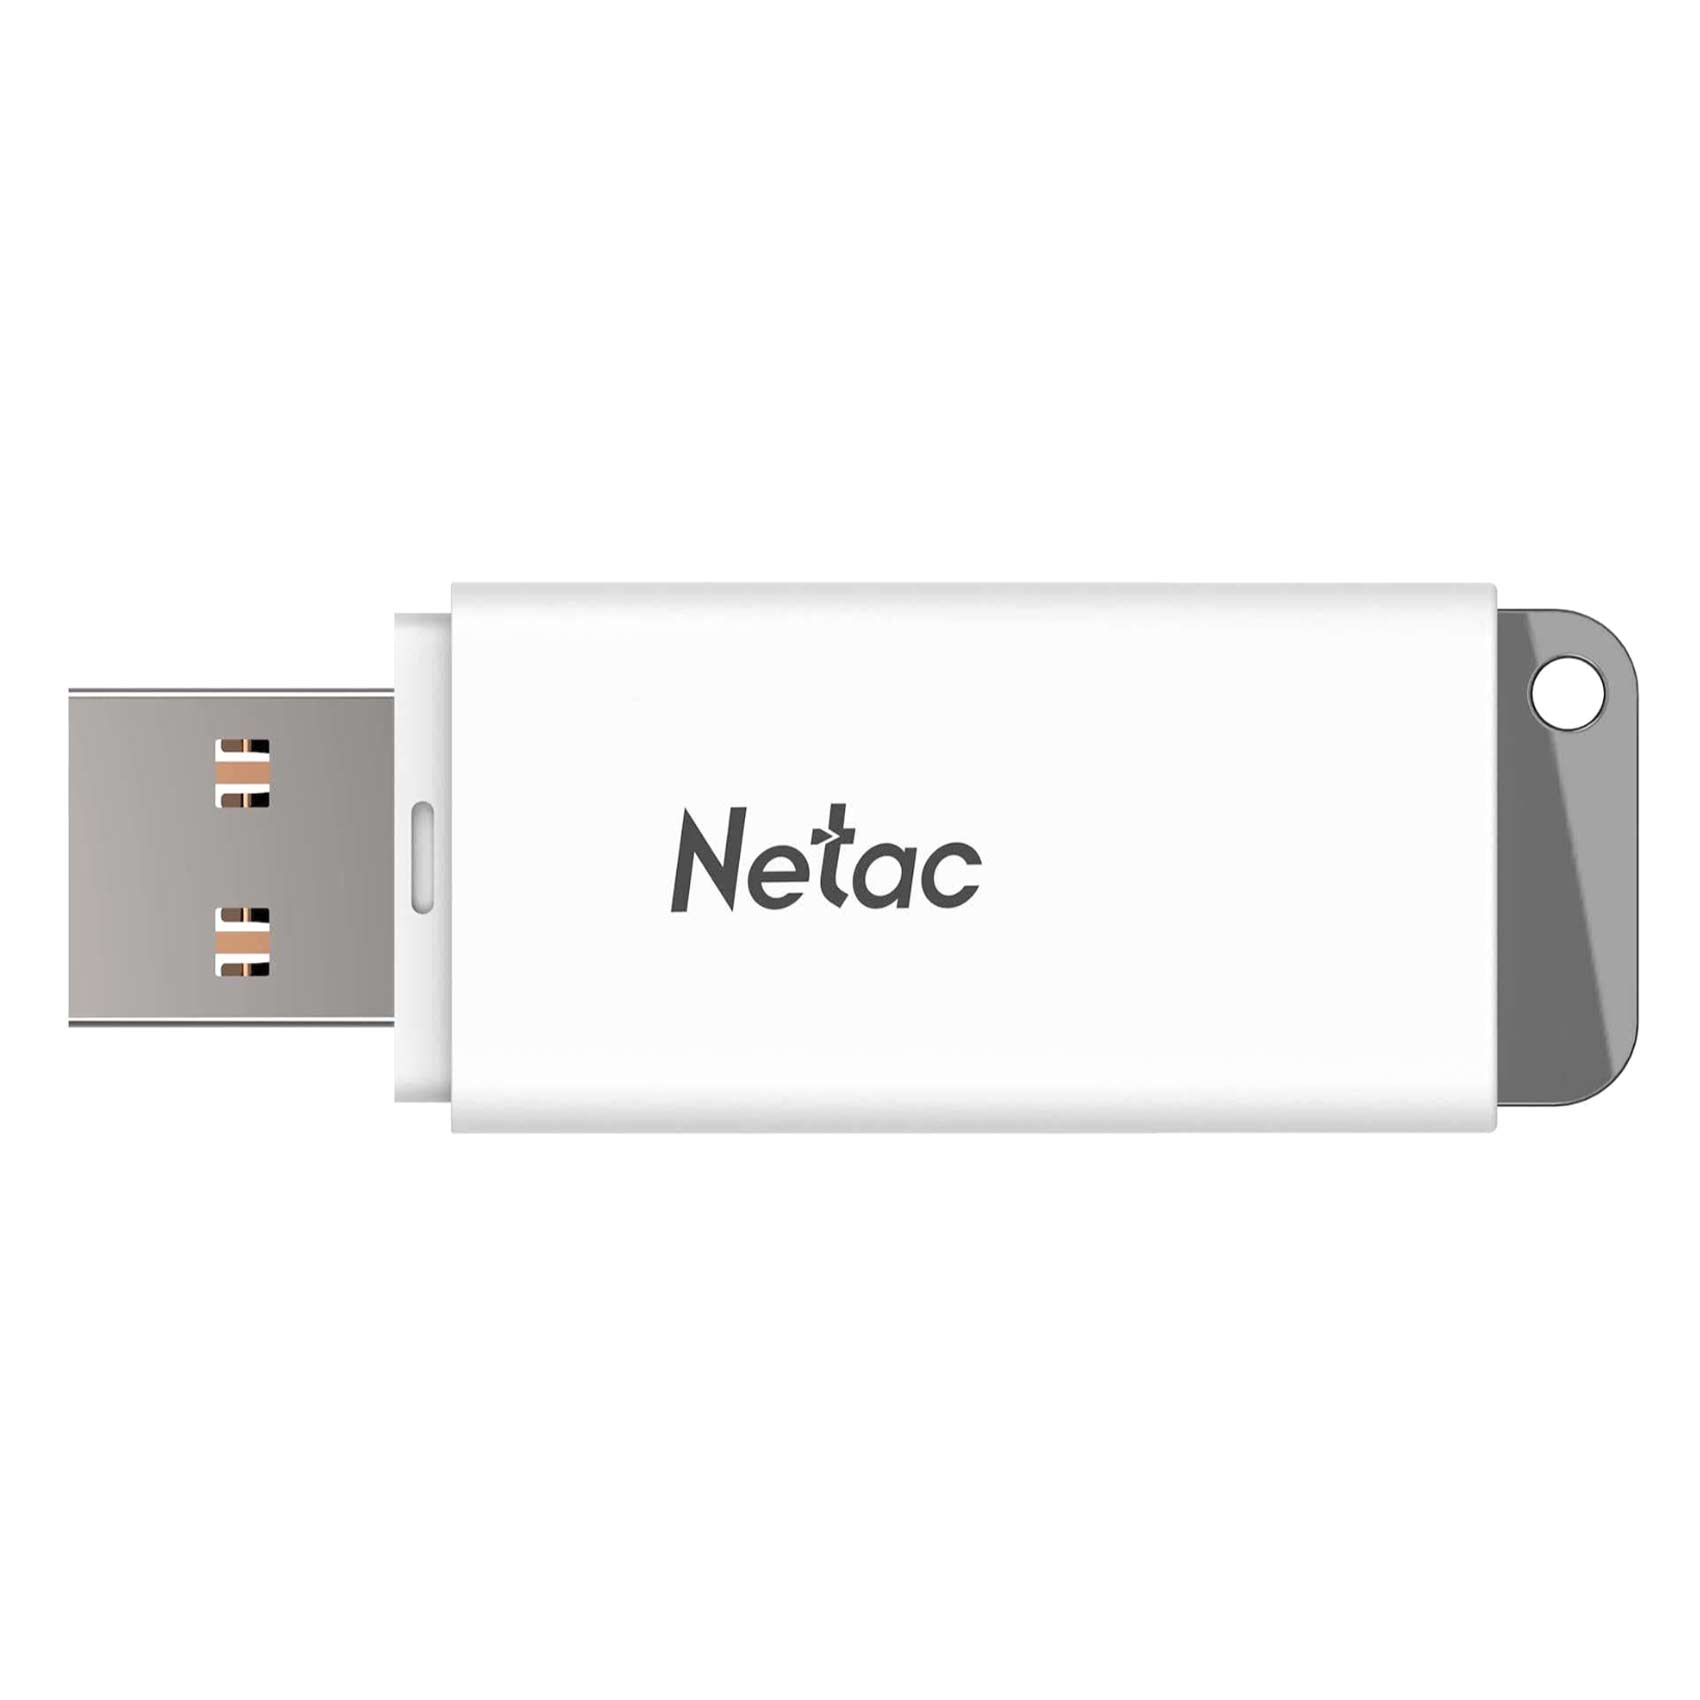 Netac Usb Flash Drive U185 16Gb 3.0